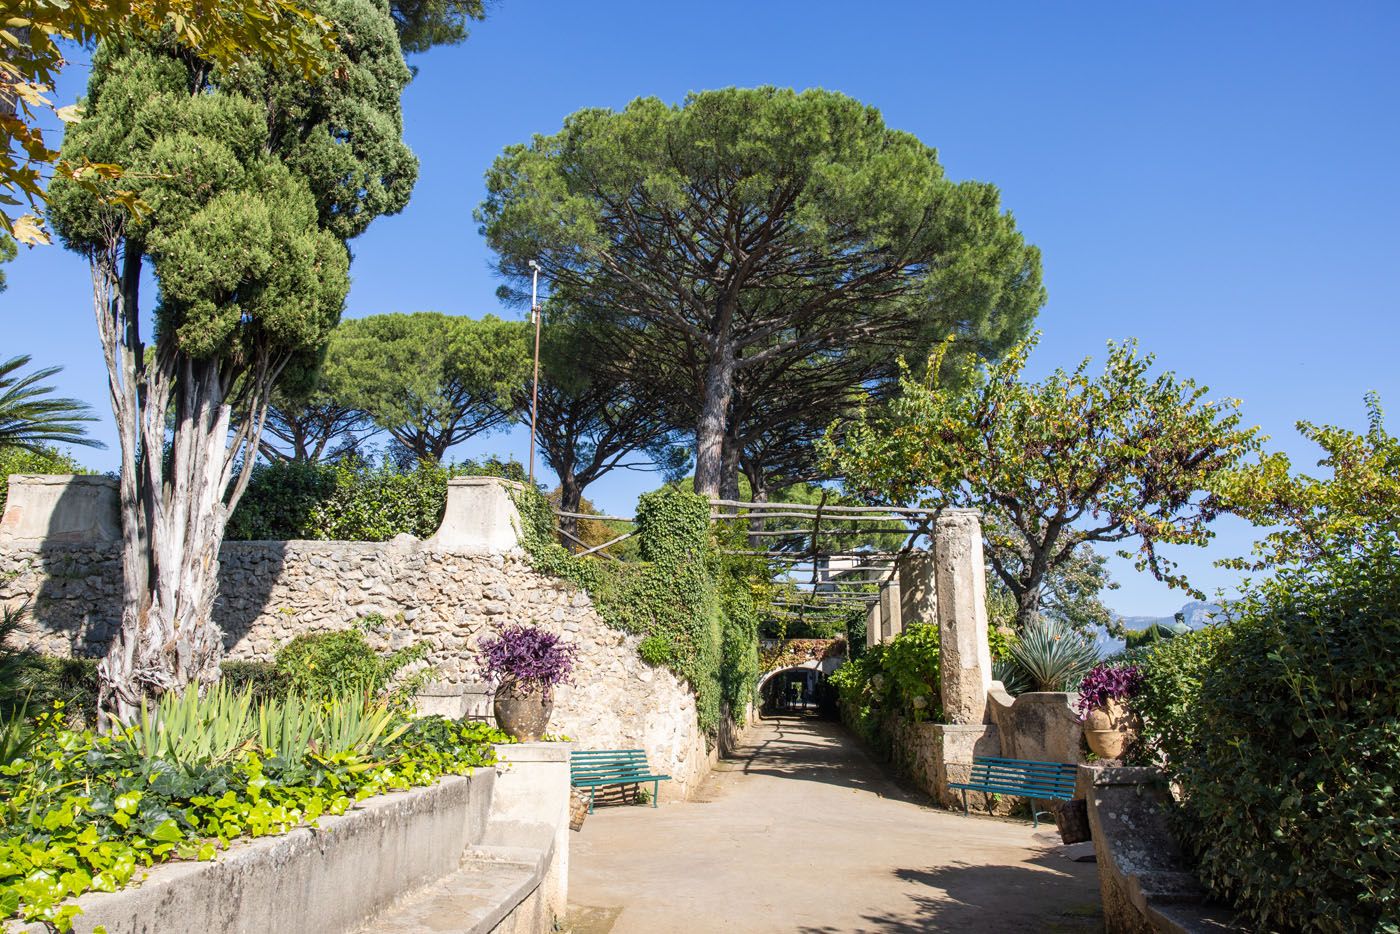 Avenue of Immensity Villa Cimbrone